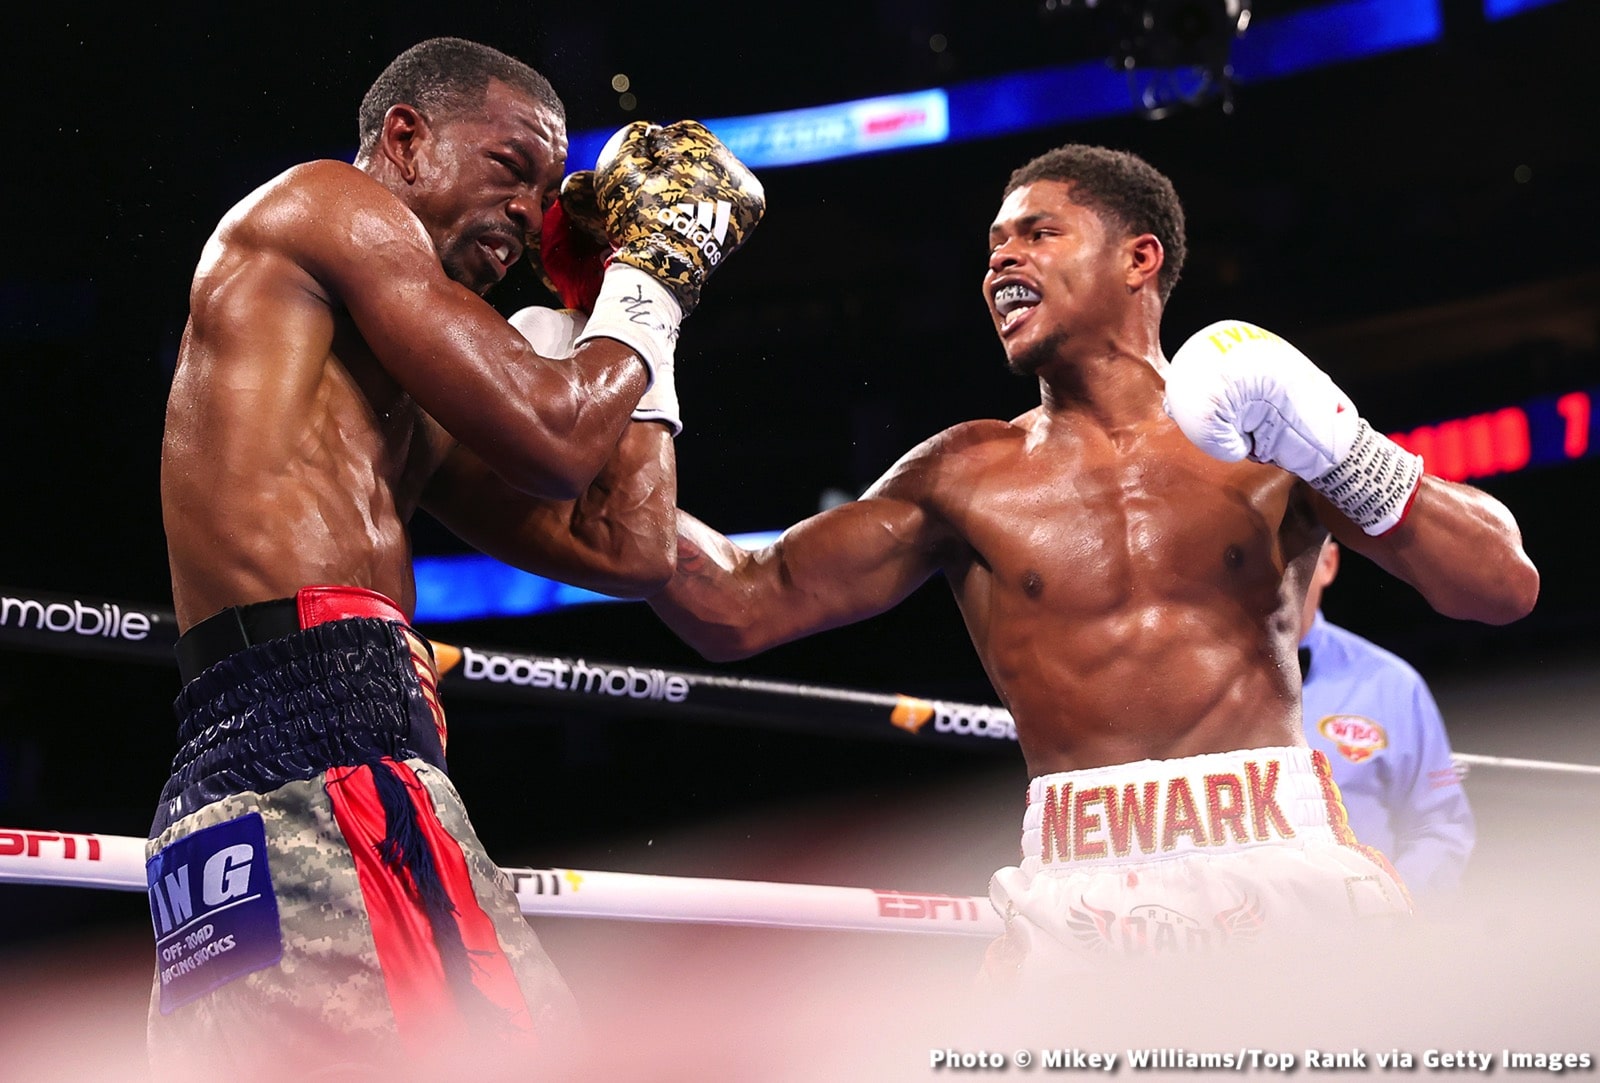 Shakur Stevenson boxing image / photo